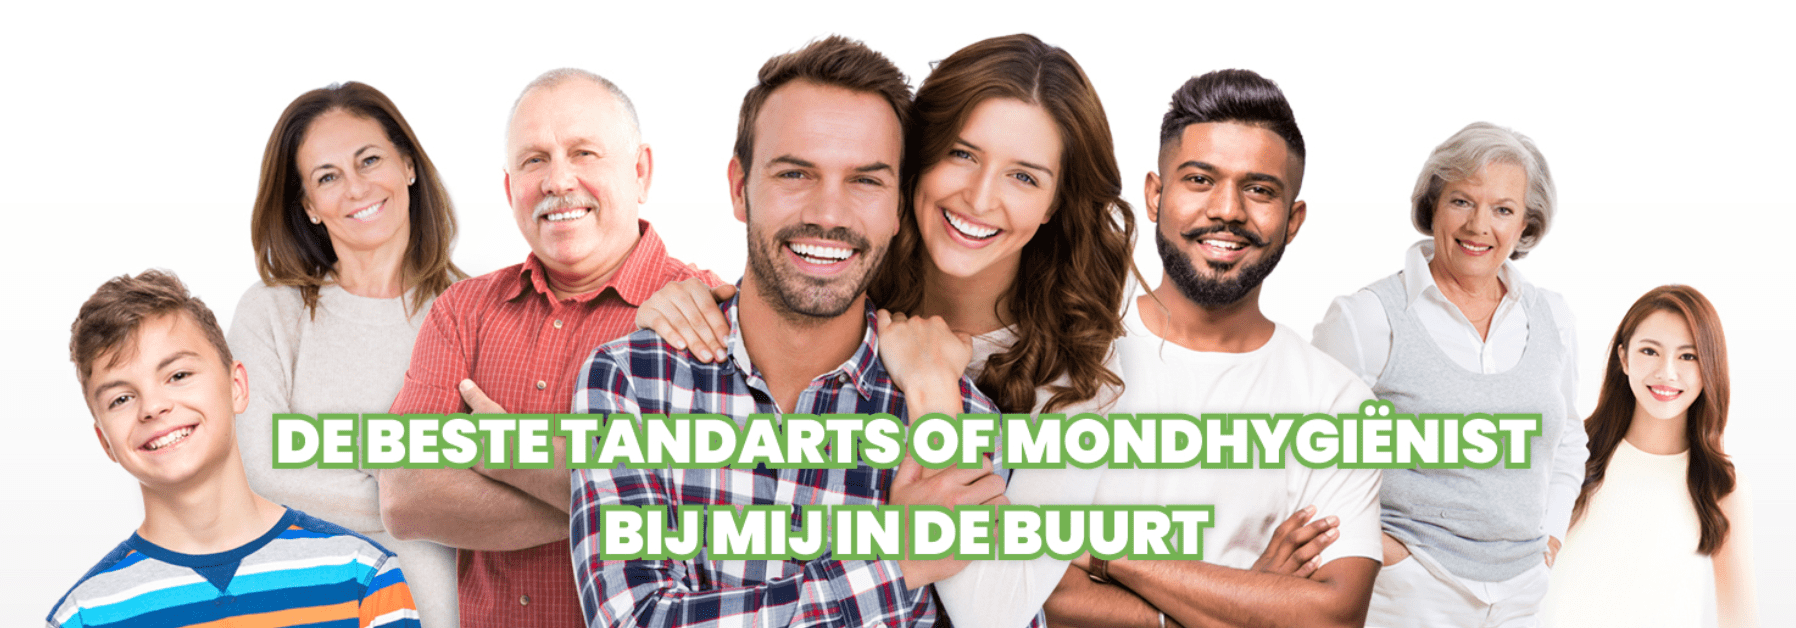 Tandarts.nl is vernieuwd. Nu nog actueler, completere en makkelijker informatie vinden over mondgezondheid, algemene gezondheid en lifestyle voor een stralende lach en een gezond lichaam! 